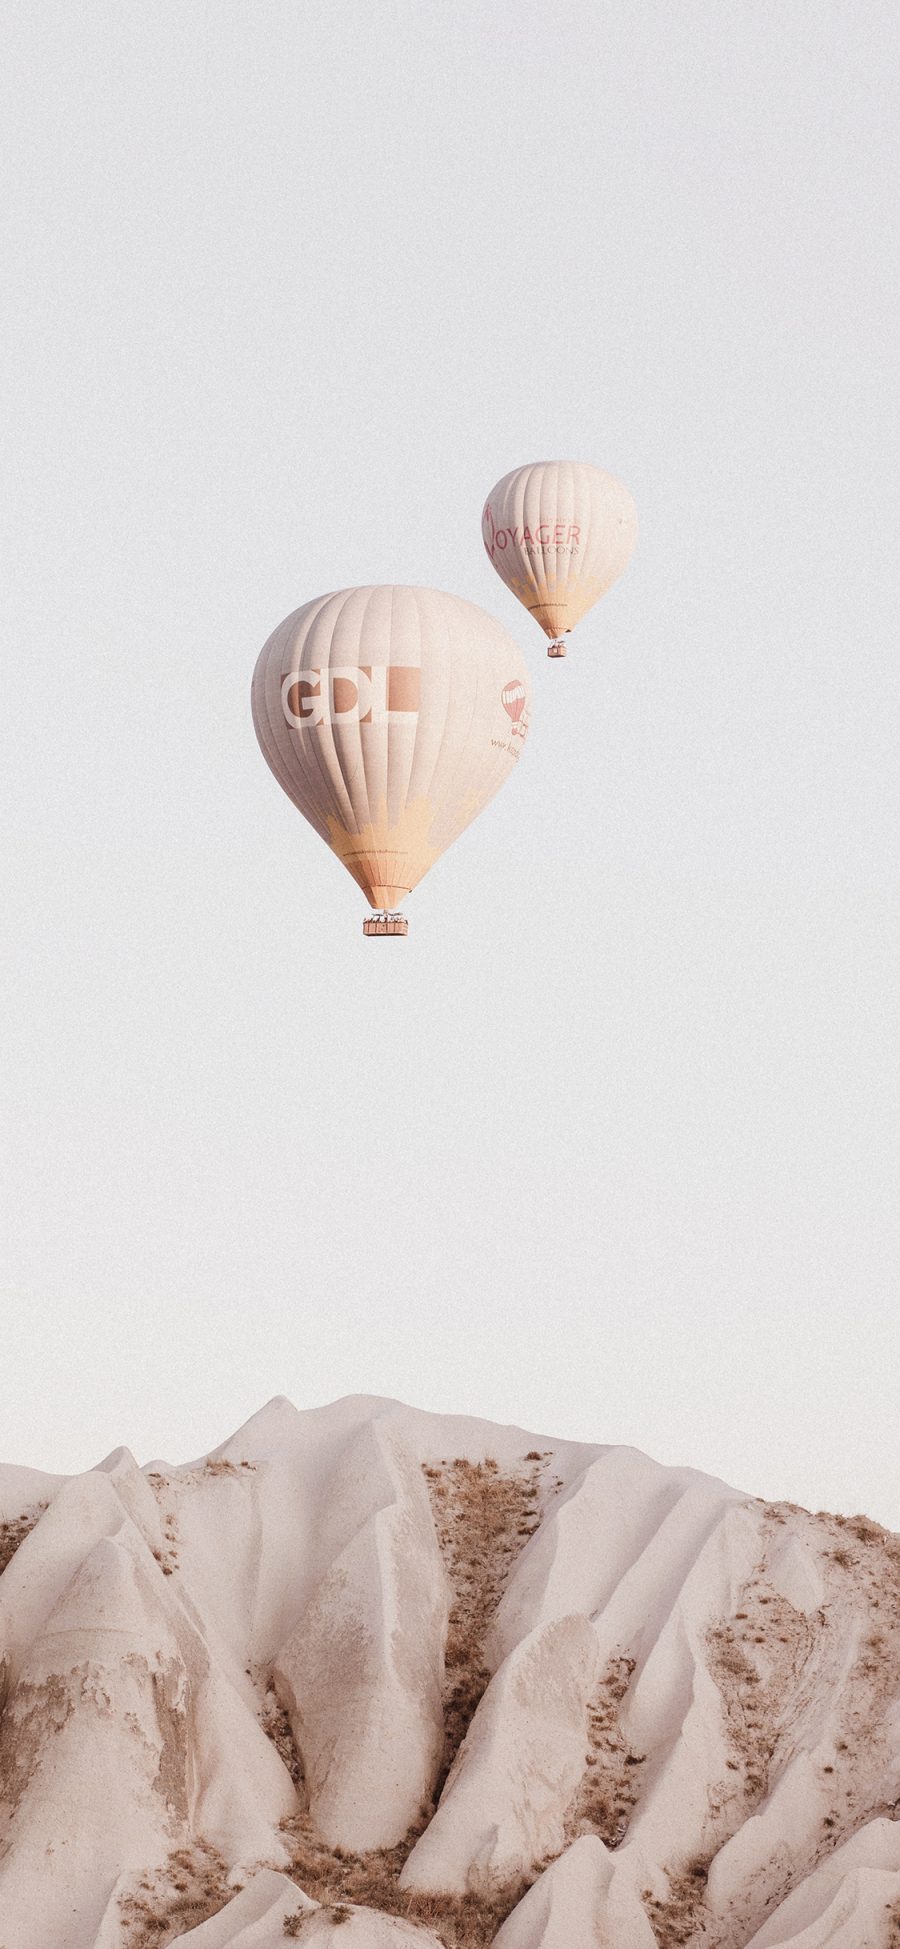 [2436×1125]热气球 荒漠 飞行 地质 苹果手机壁纸图片